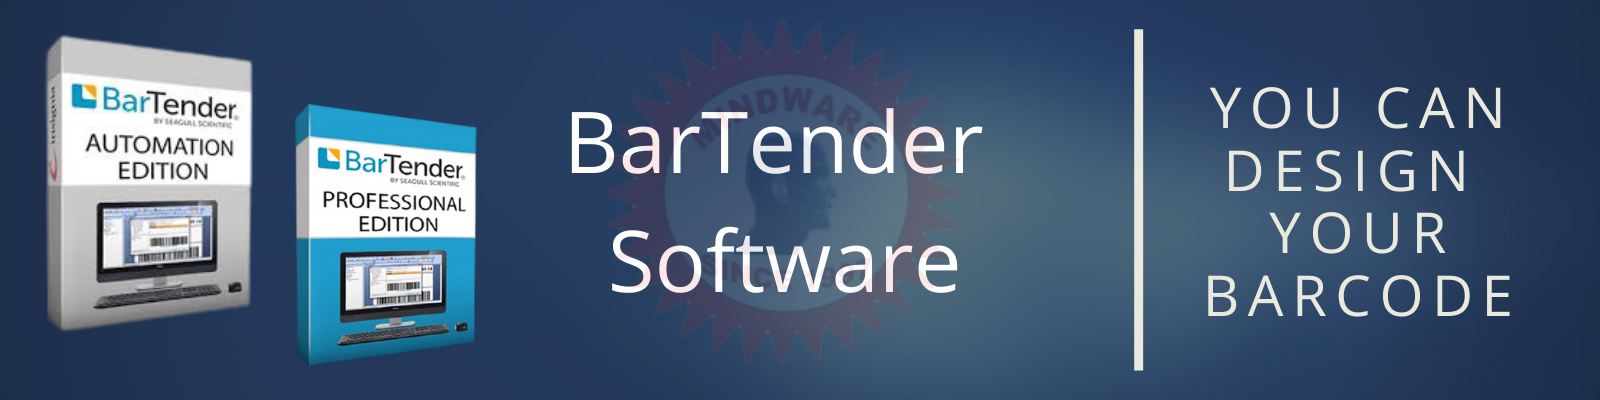 Bartender software